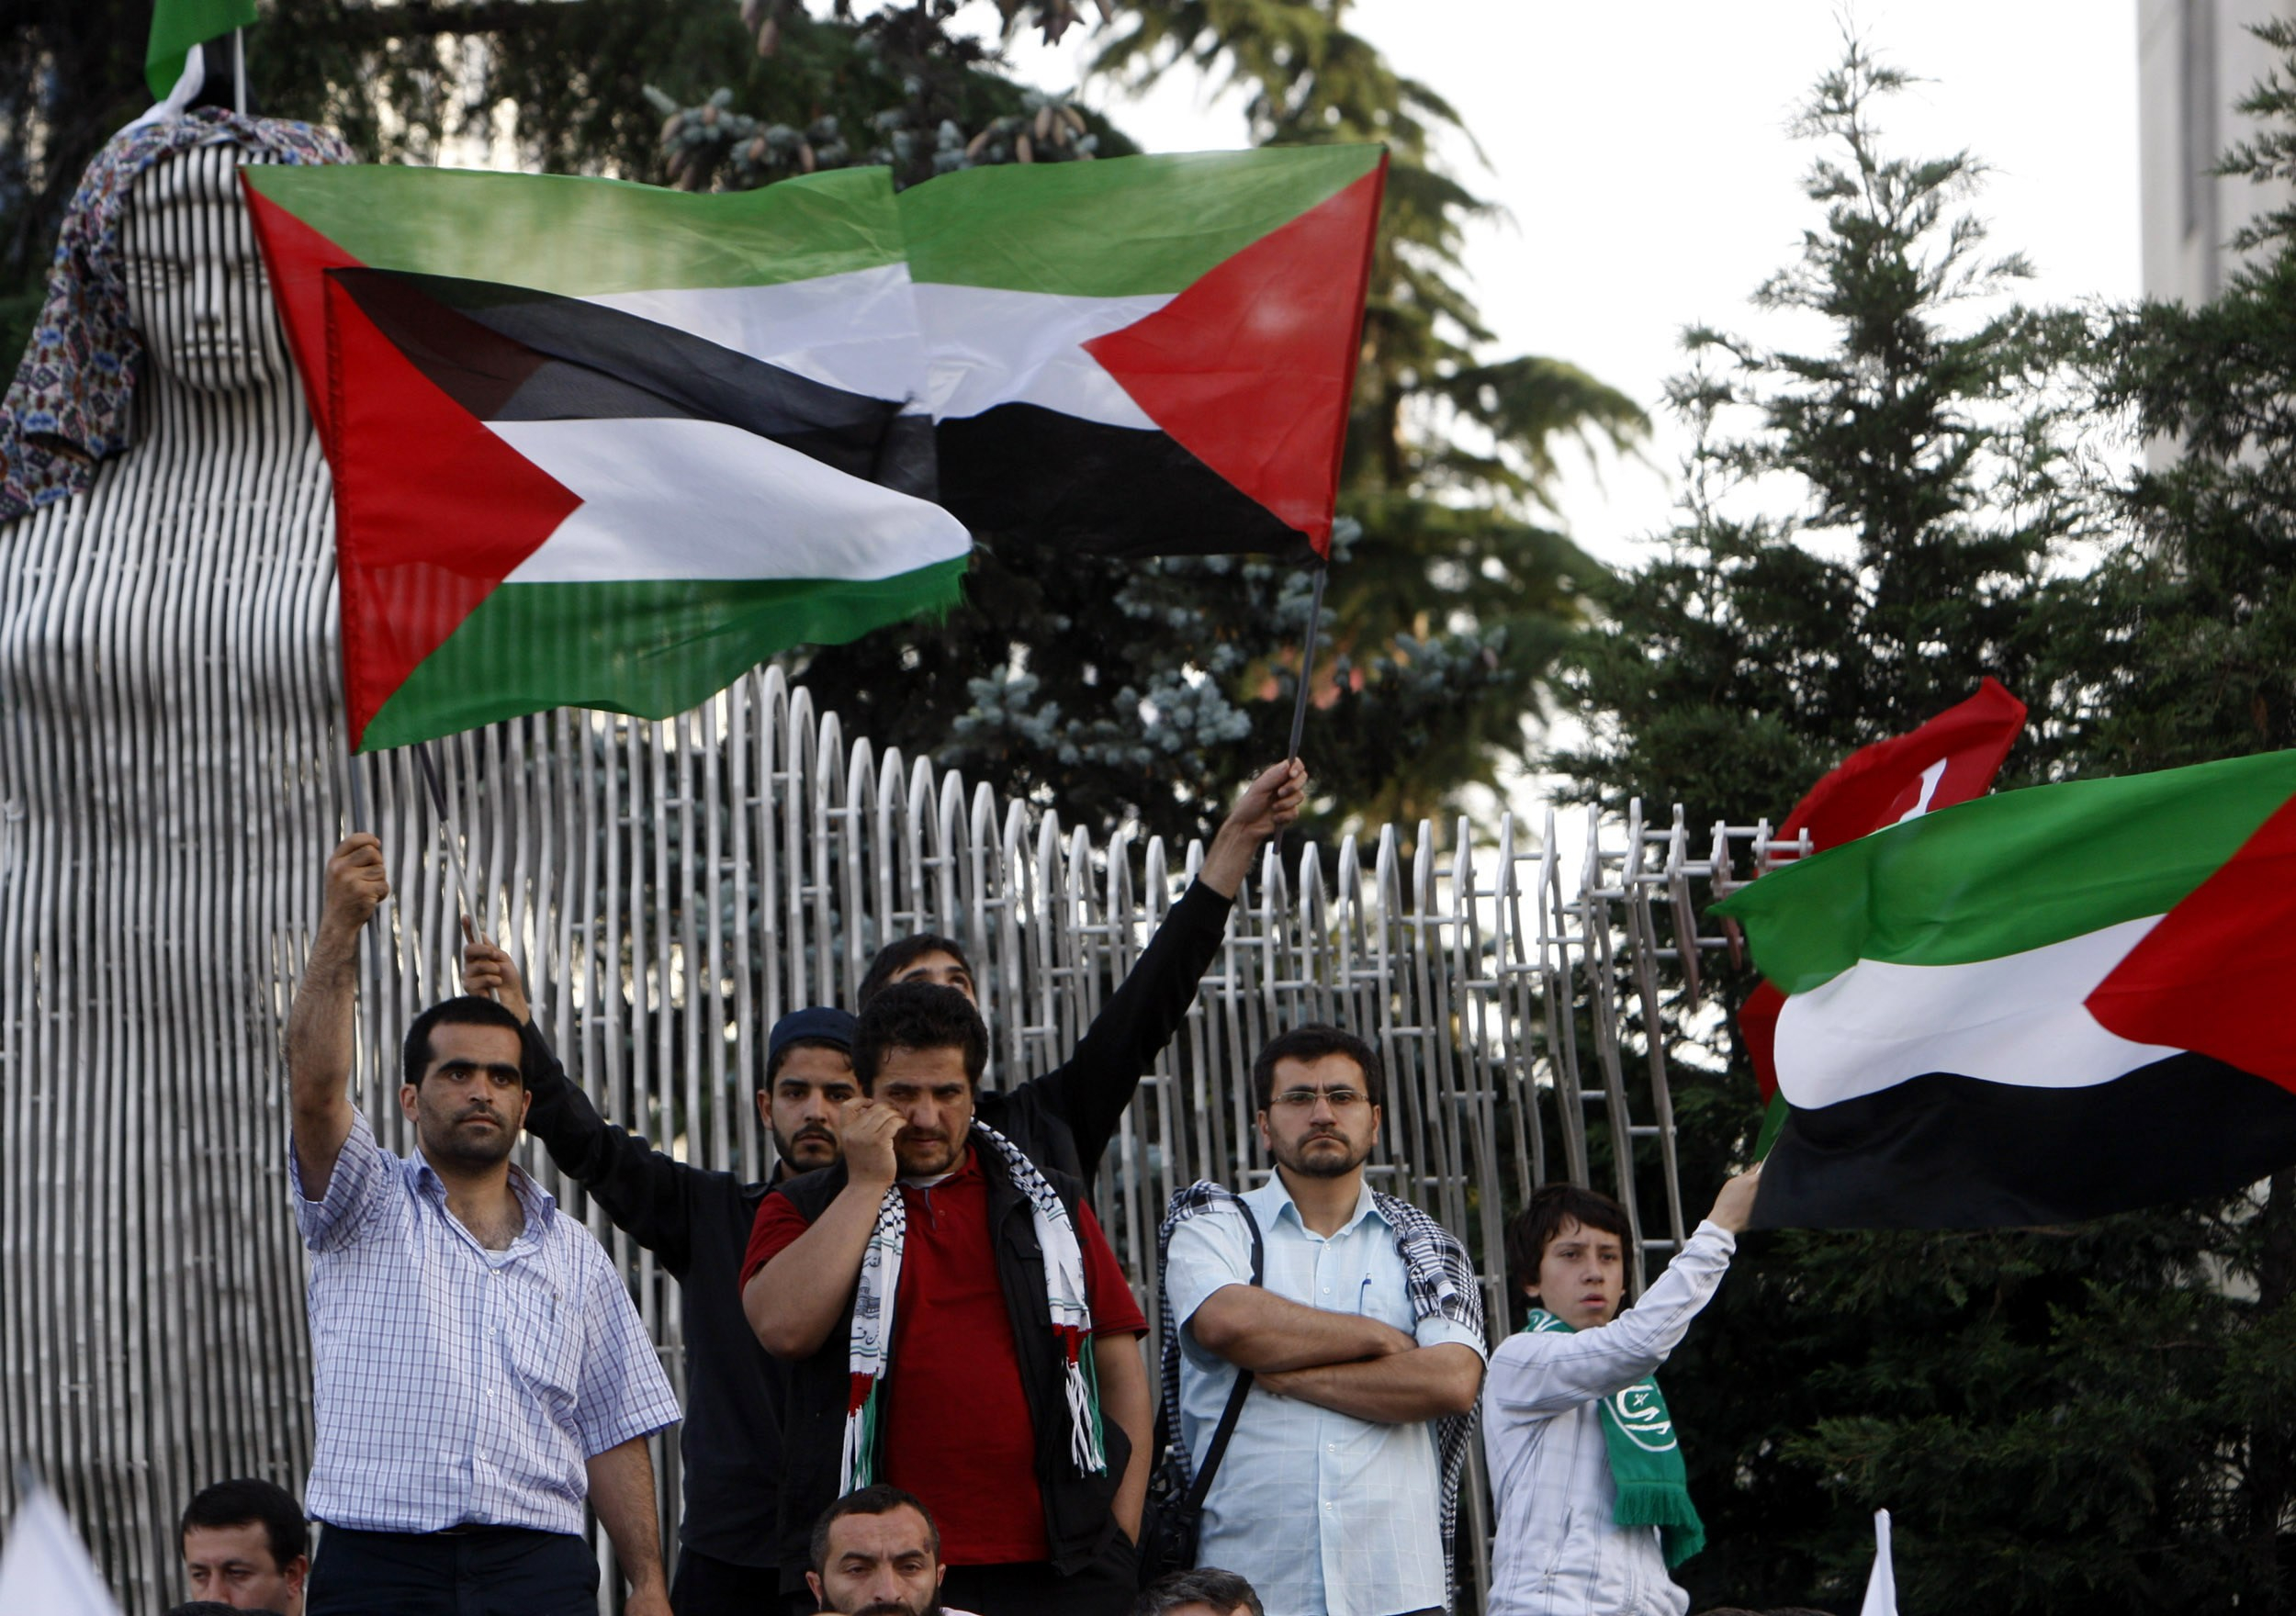 Доклад: Палестинское движение сопротивления. Организация освобождения палестины